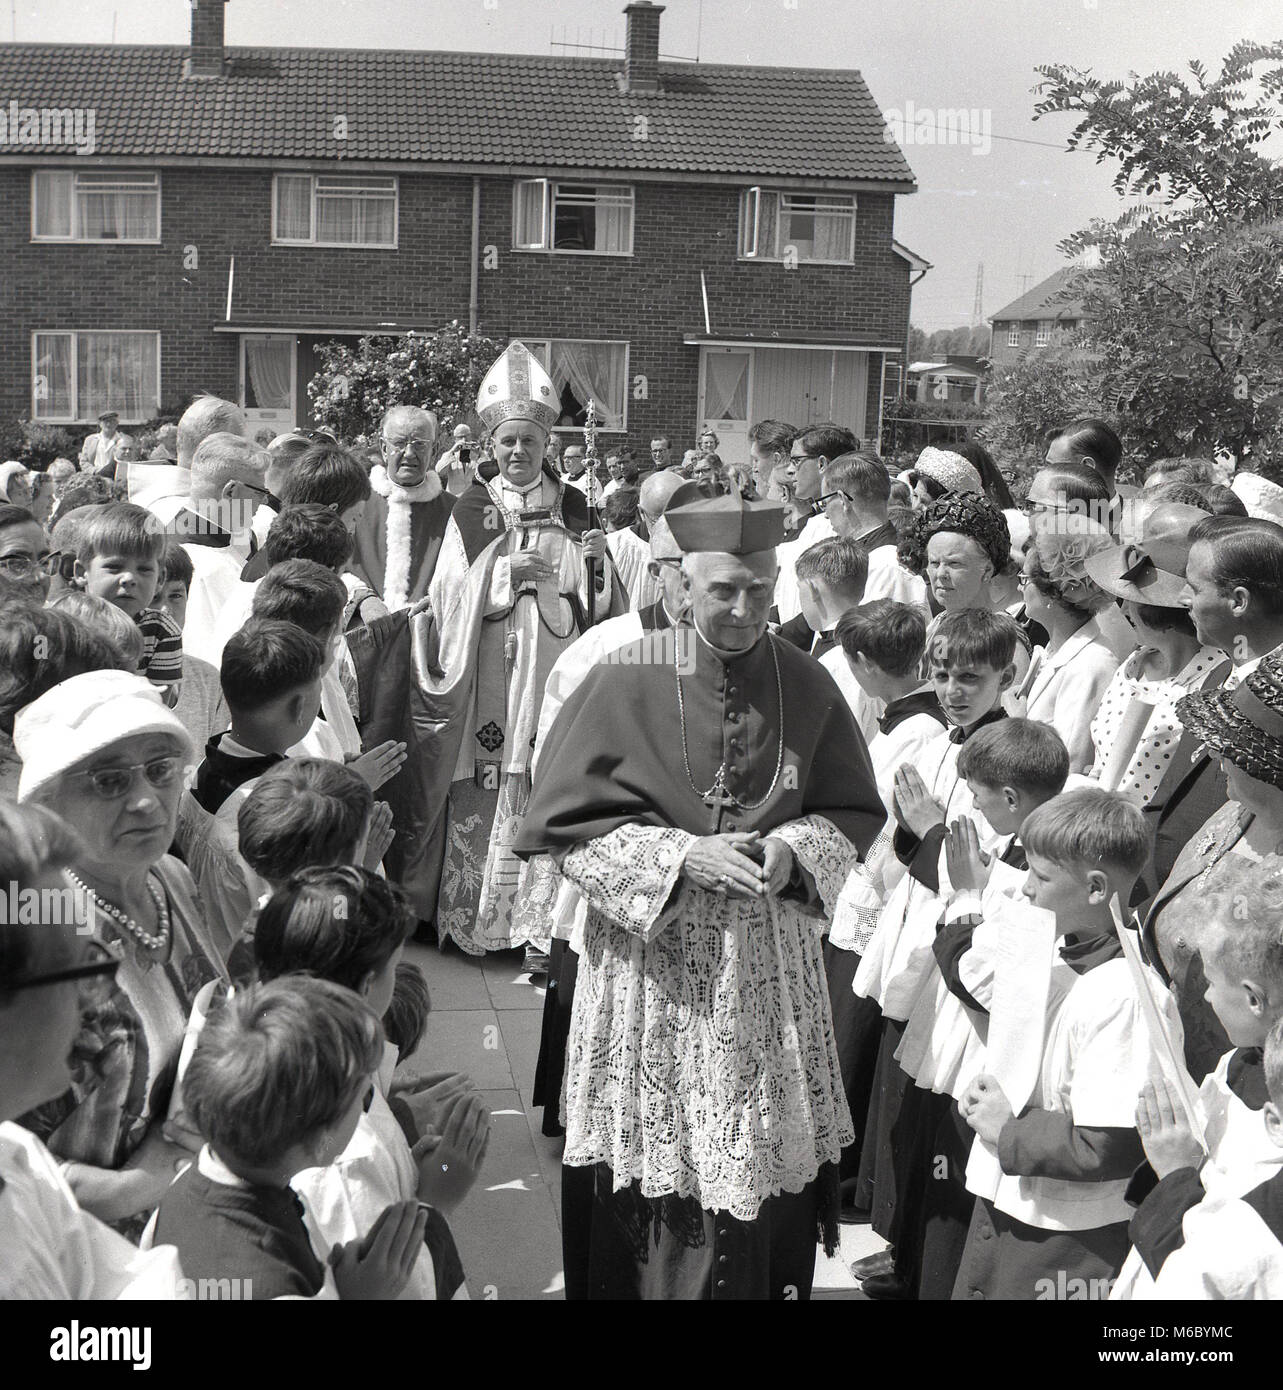 Années 1960, spectateurs adultes et enfants bienvenue la visite d'un évêque catholique romain de leur quartier, un nouveau domaine, de logement de style moderne années 60, Bucks, England, UK. Banque D'Images